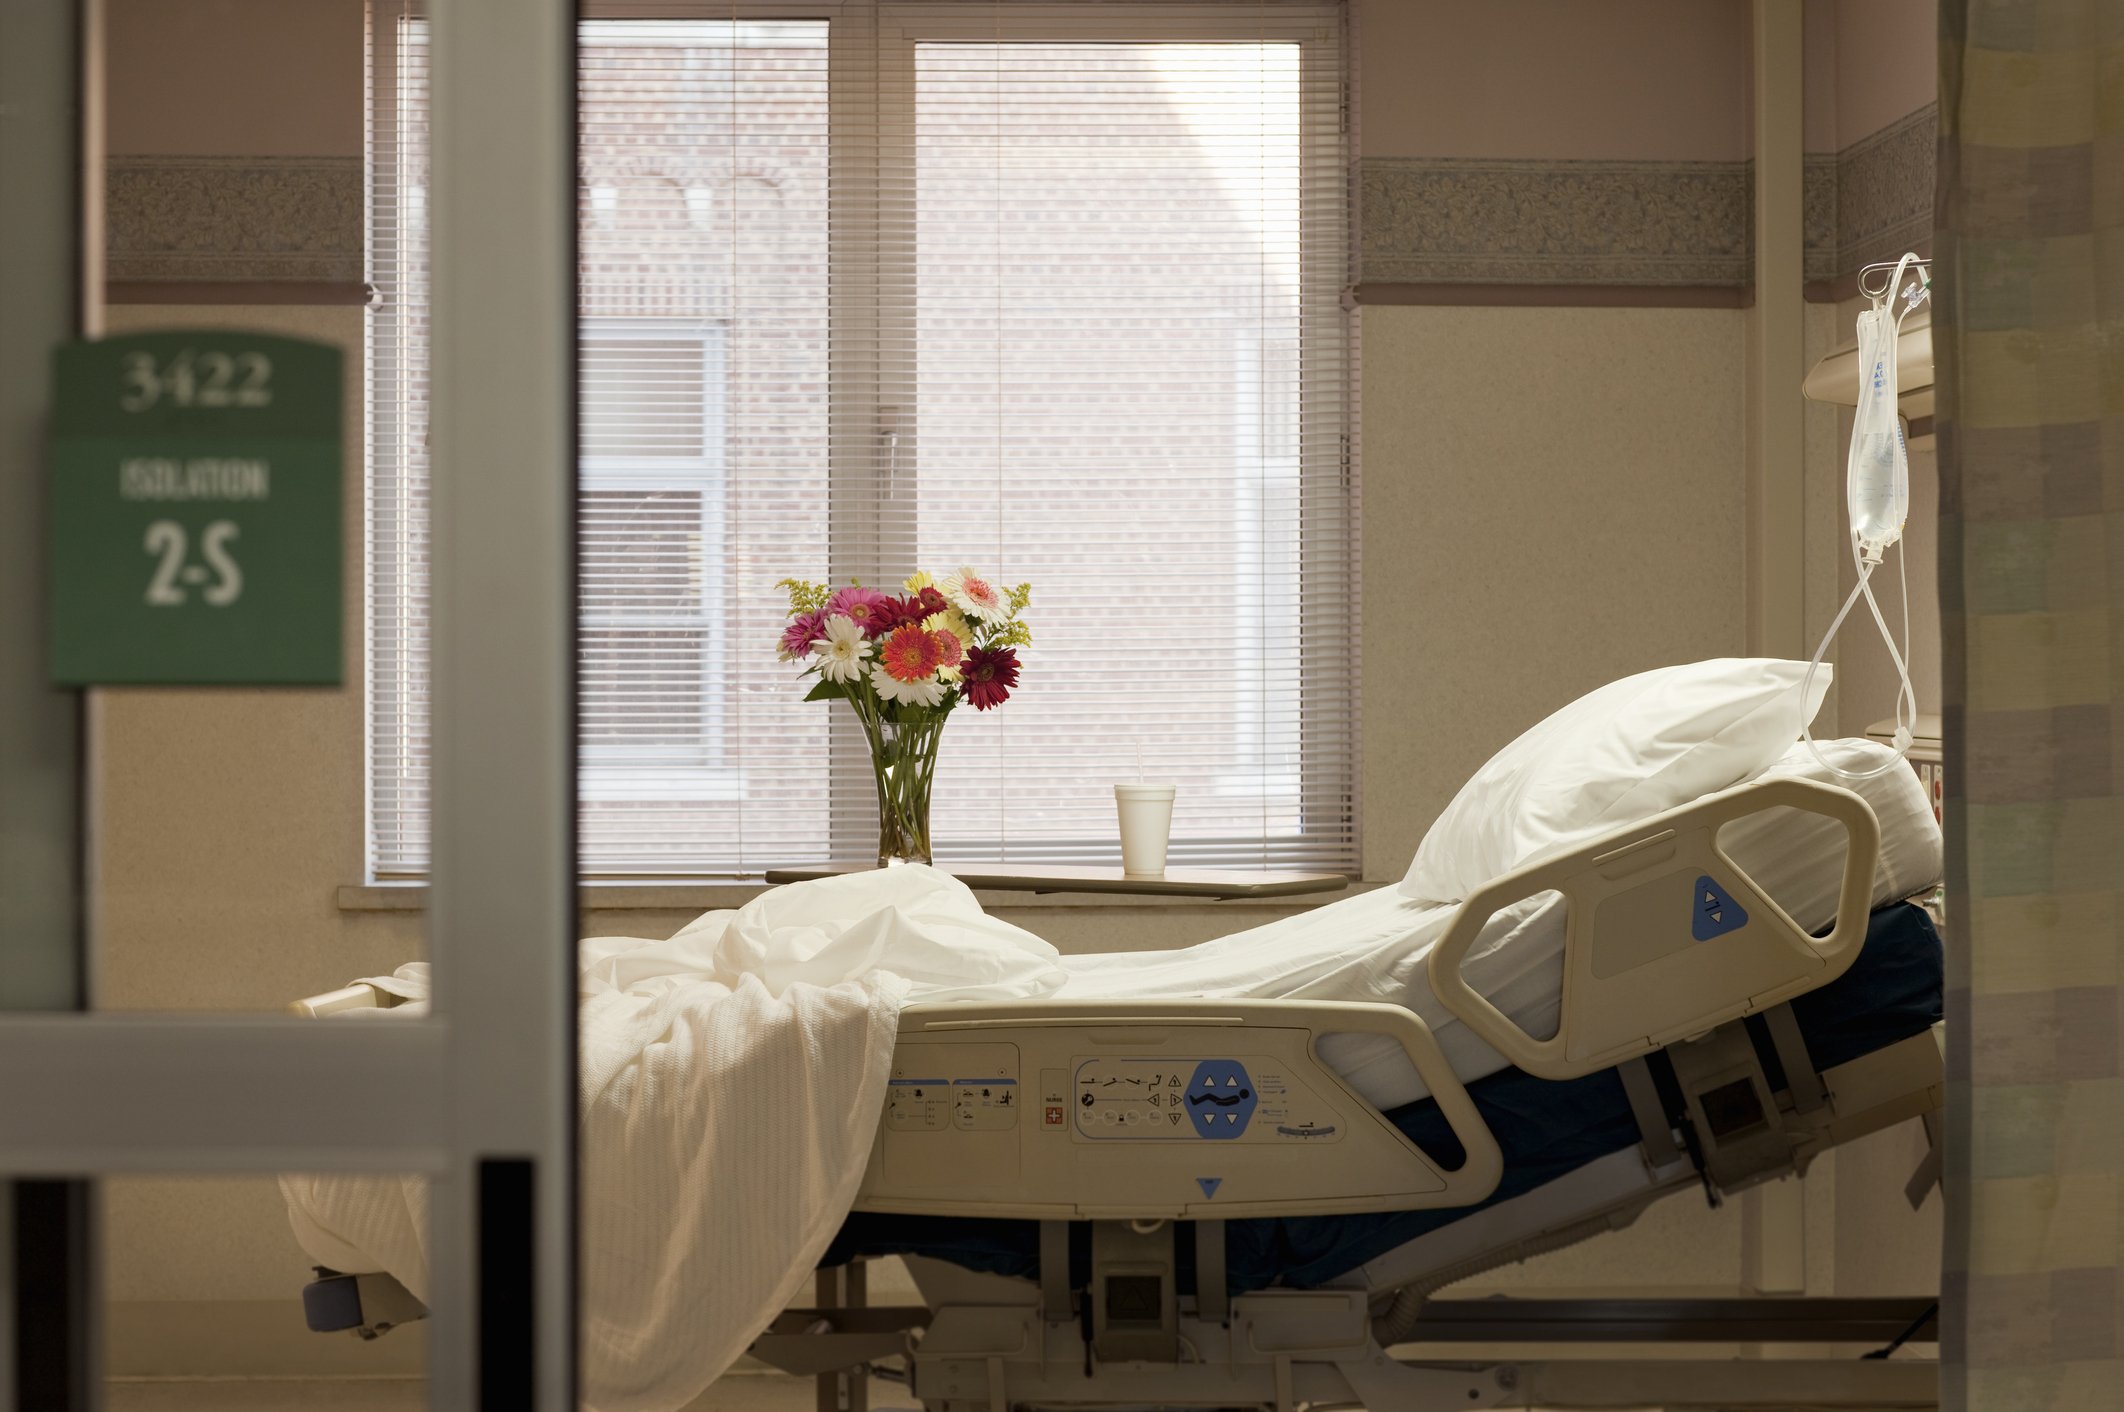 Leeres Krankenhausbett im Zimmer mit Blumen und Infusionsbeutel | Quelle: Getty Images